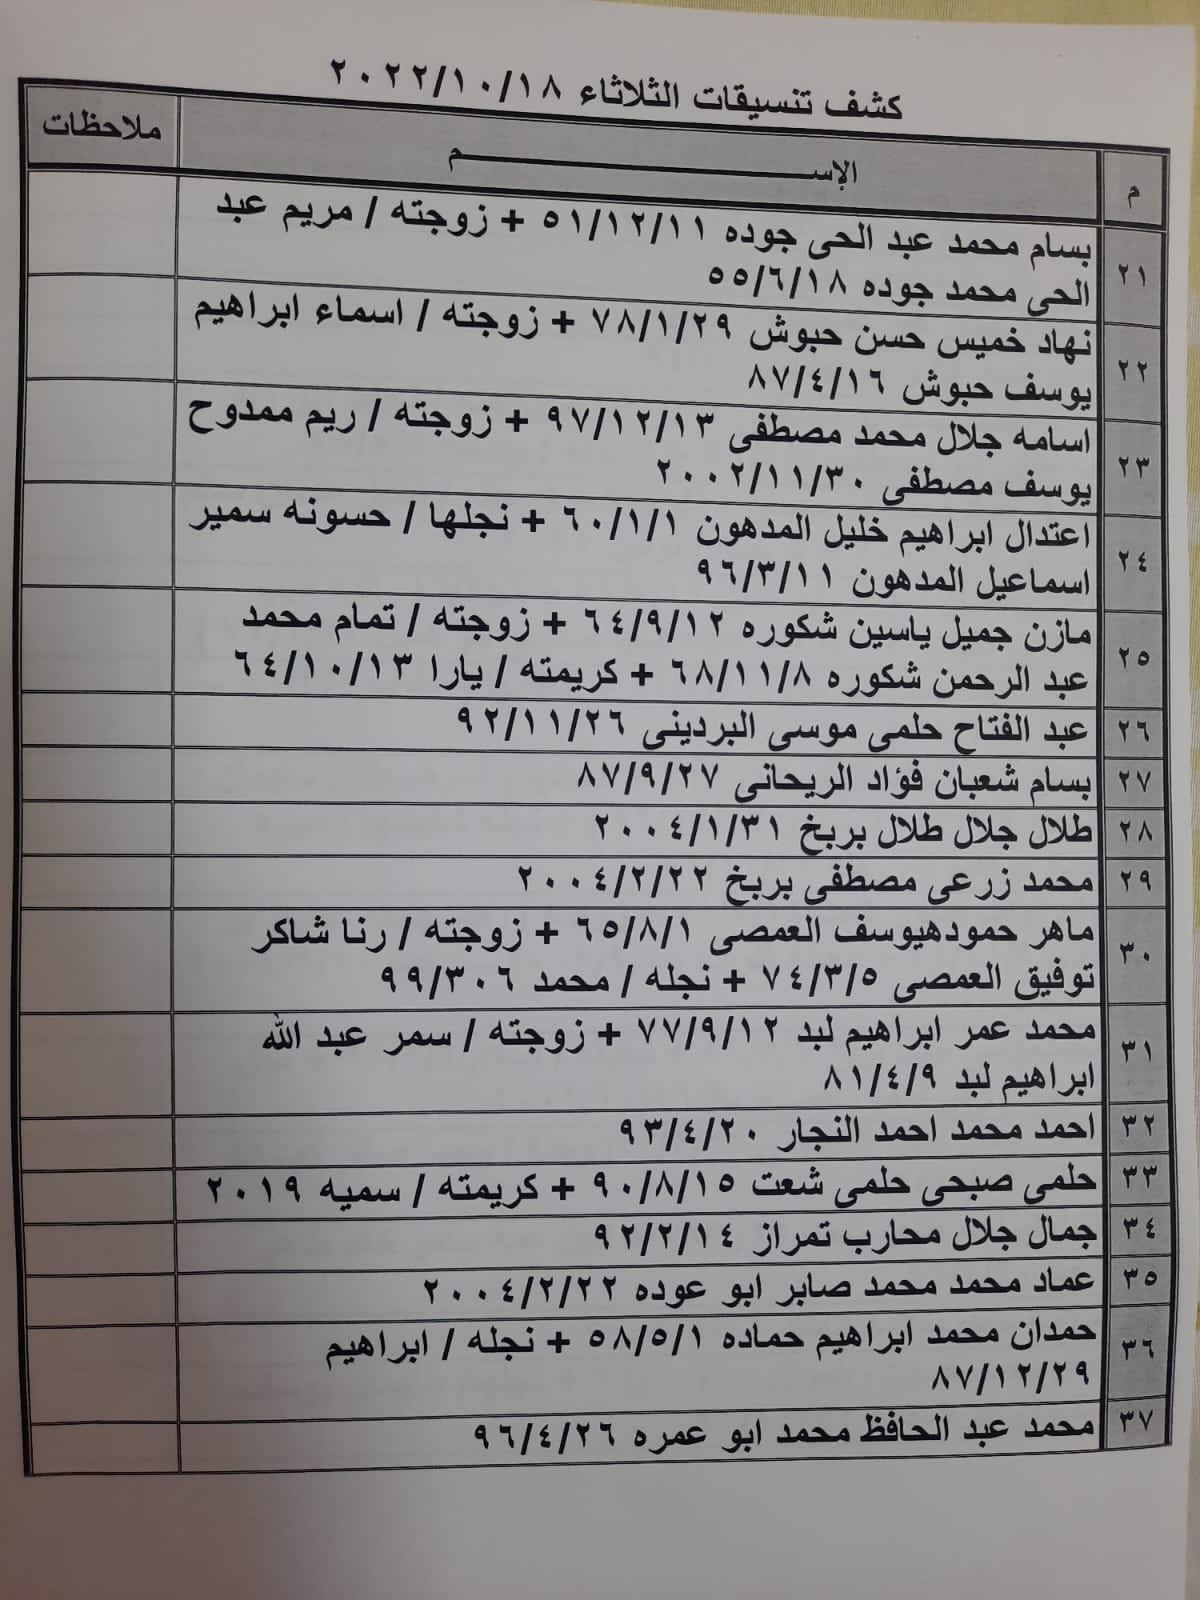 بالأسماء: كشف "تنسيقات مصرية" للسفر عبر معبر رفح غدًا الثلاثاء 18 أكتوبر 2022